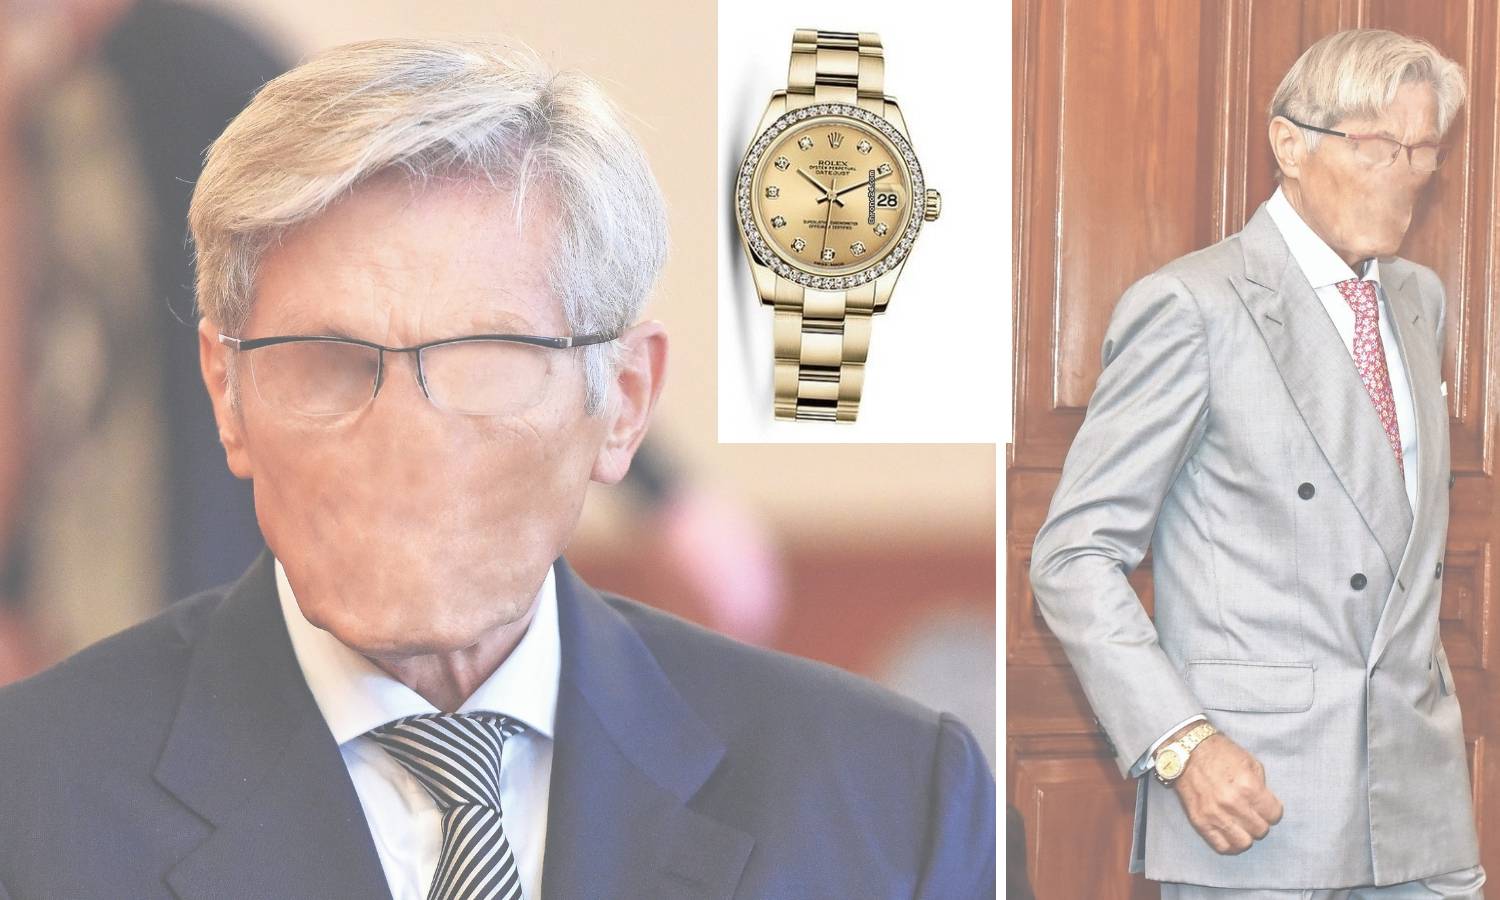 Horvatinčić na suđenju imao blještavi sat: Rolex ili kopija?